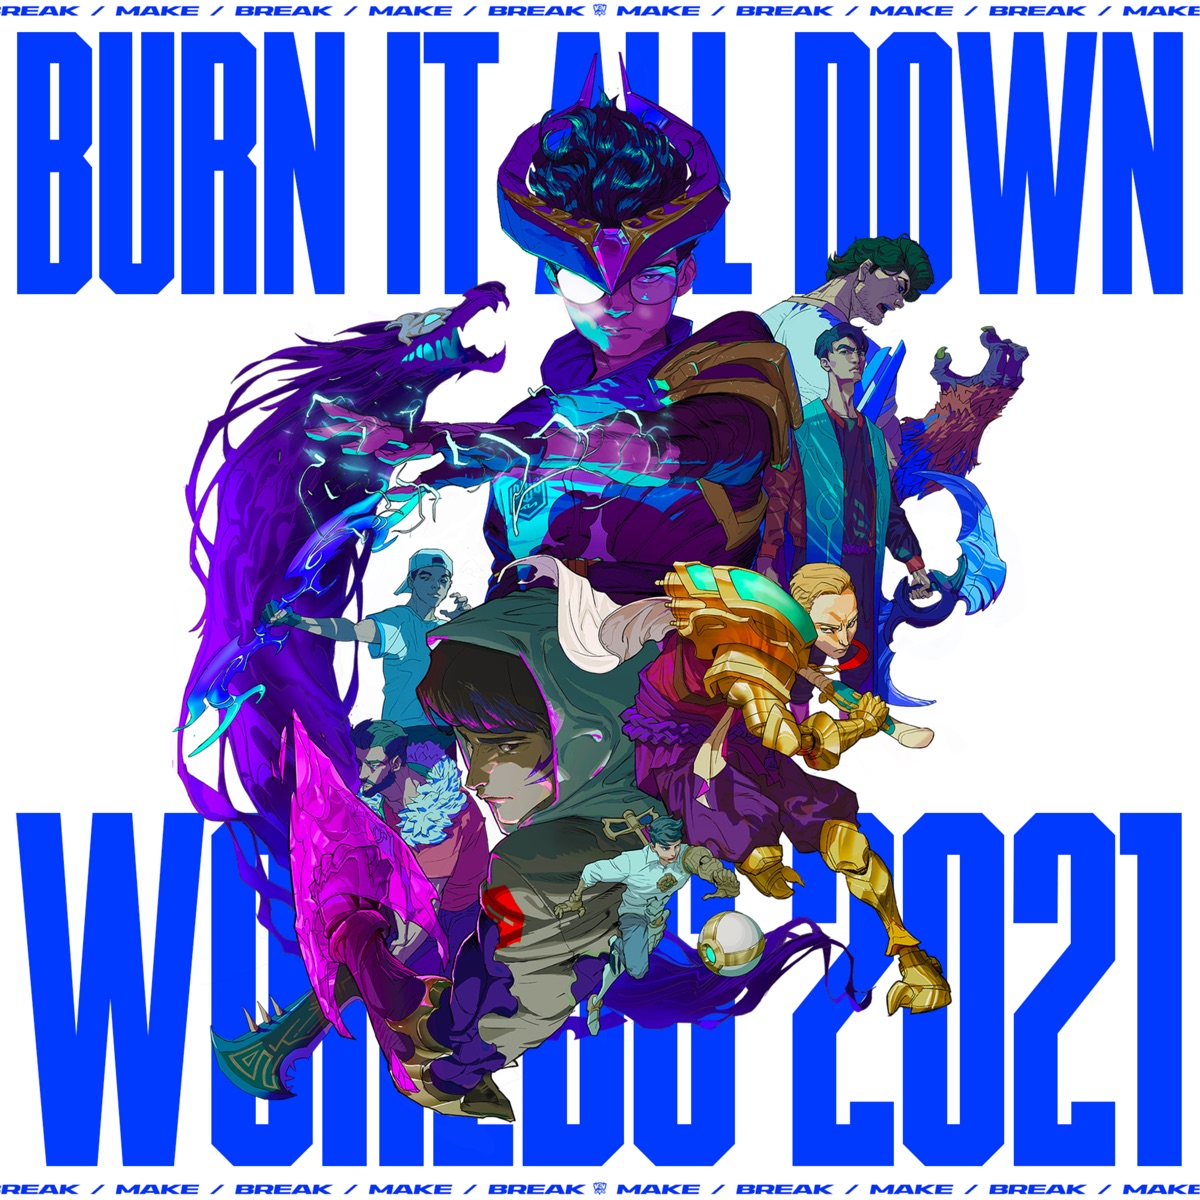 『League of Legends - Burn It All Down (ft. PVRIS) 歌詞』収録の『Burn It All Down (ft. PVRIS)』ジャケット